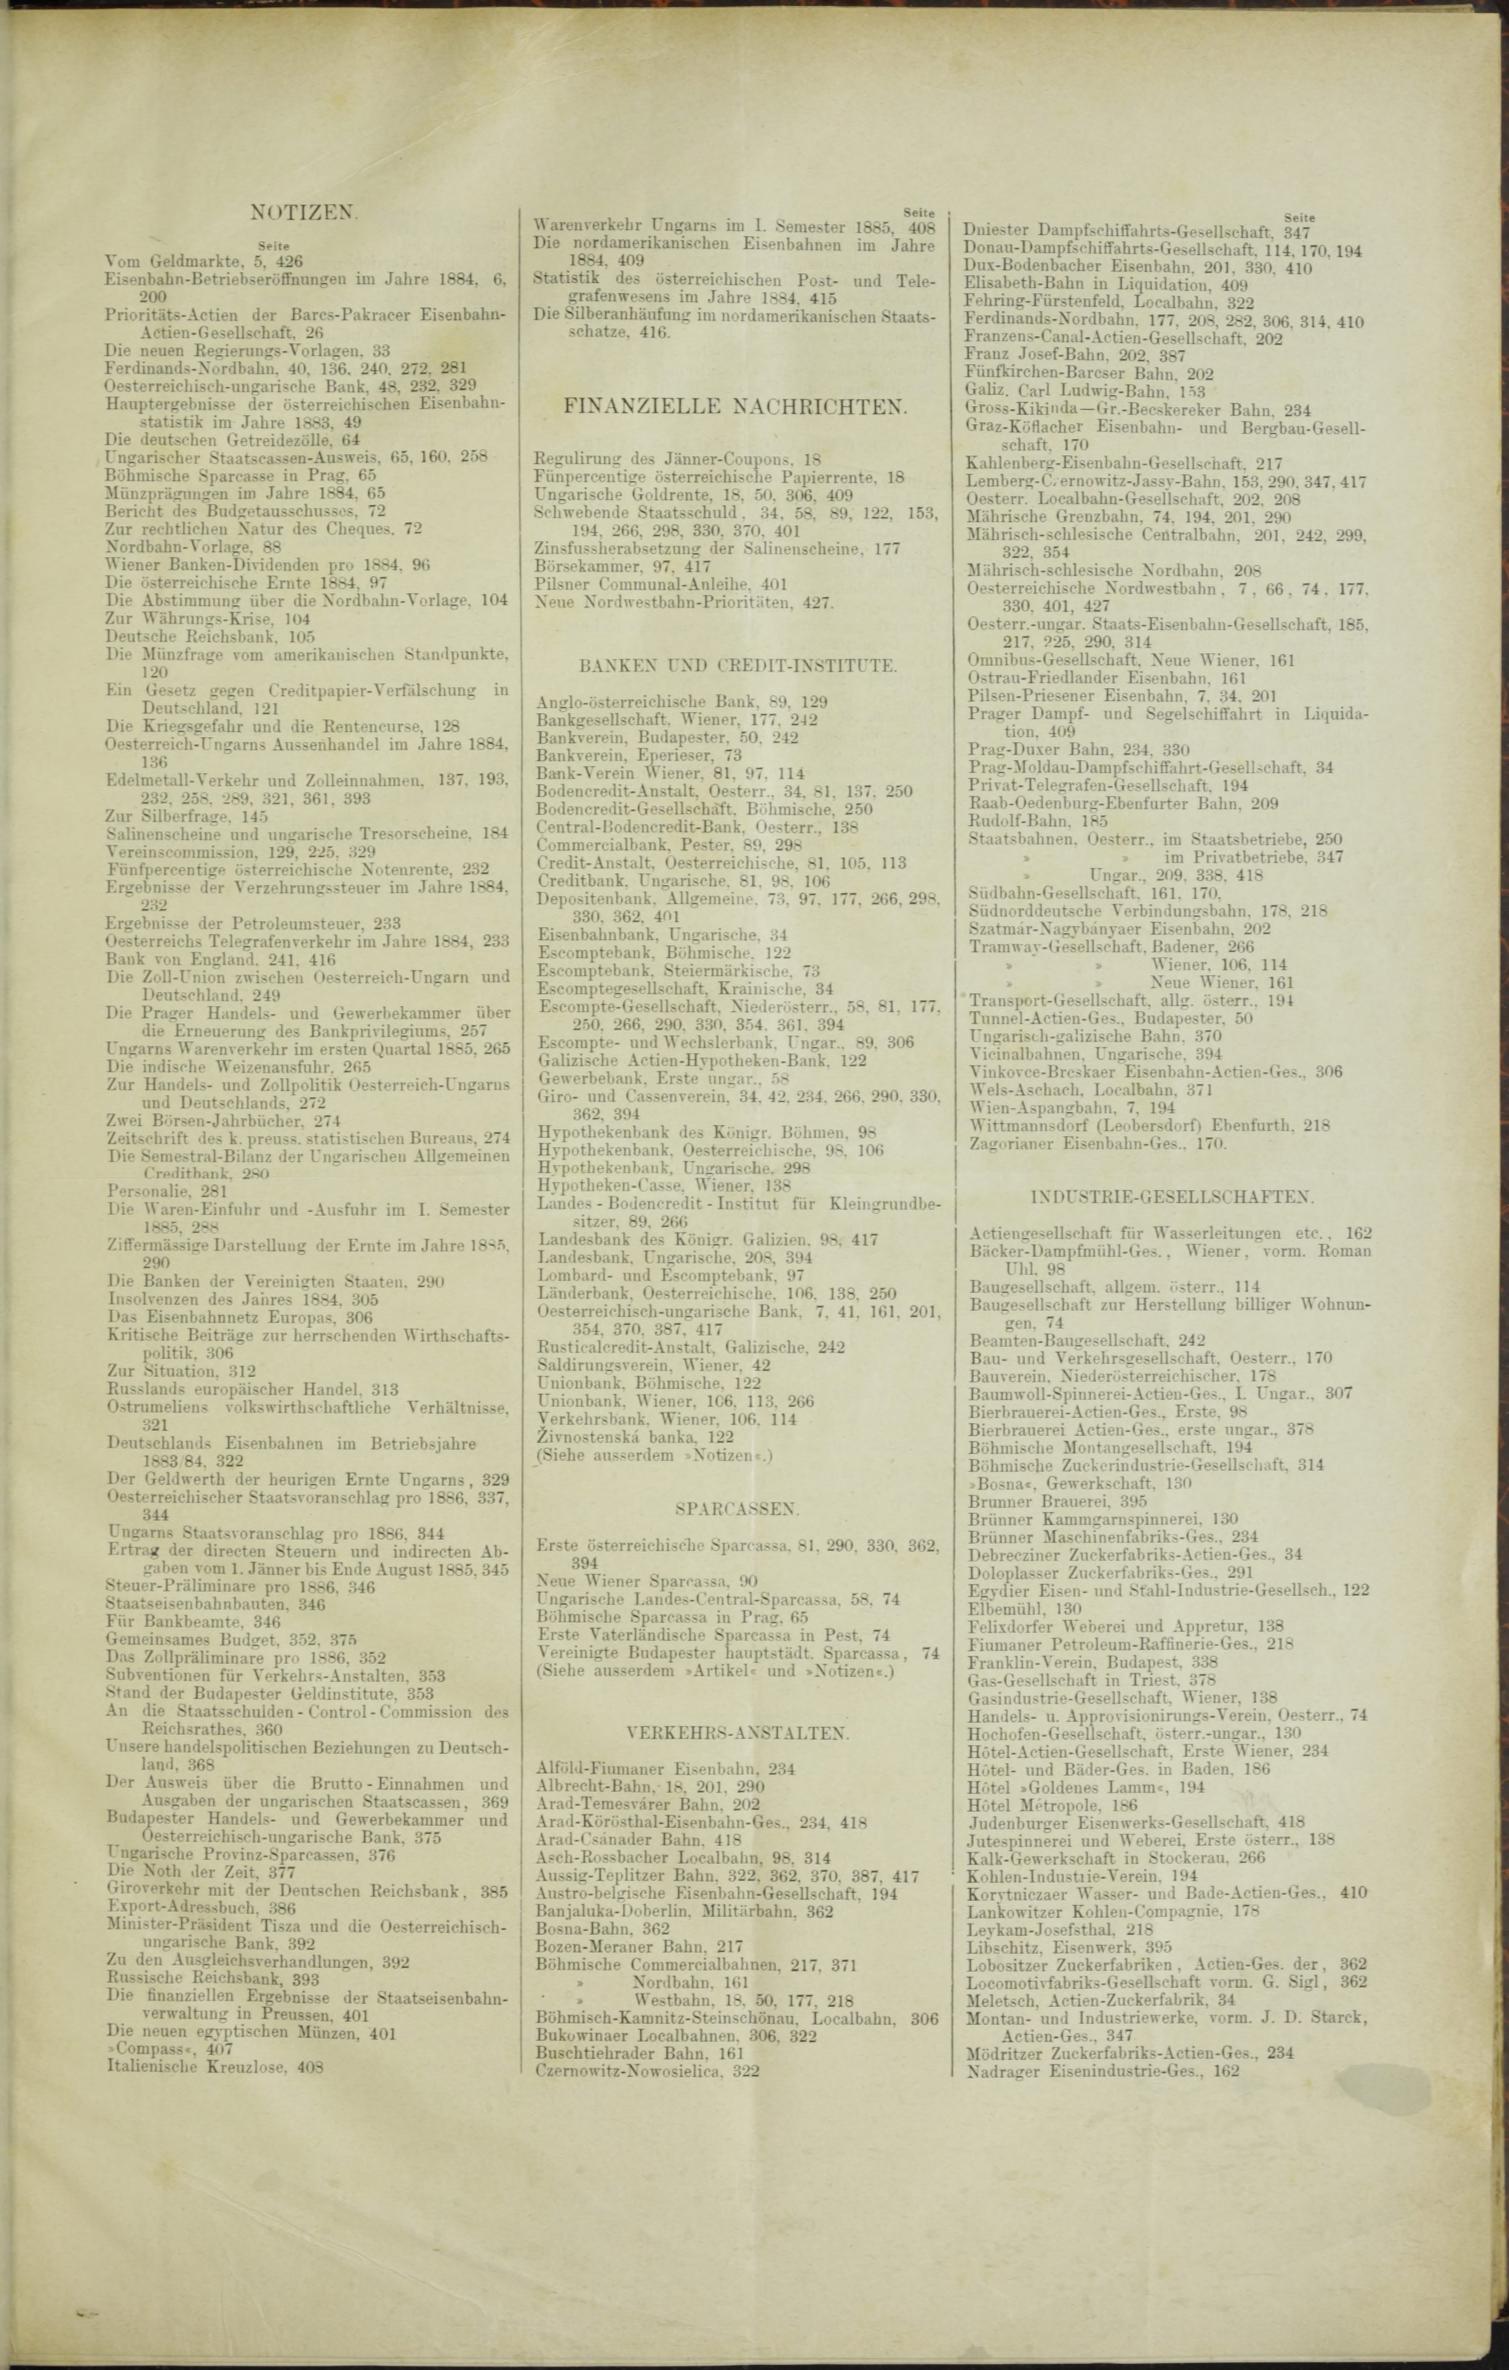 Der Tresor 10.09.1885 - Seite 11